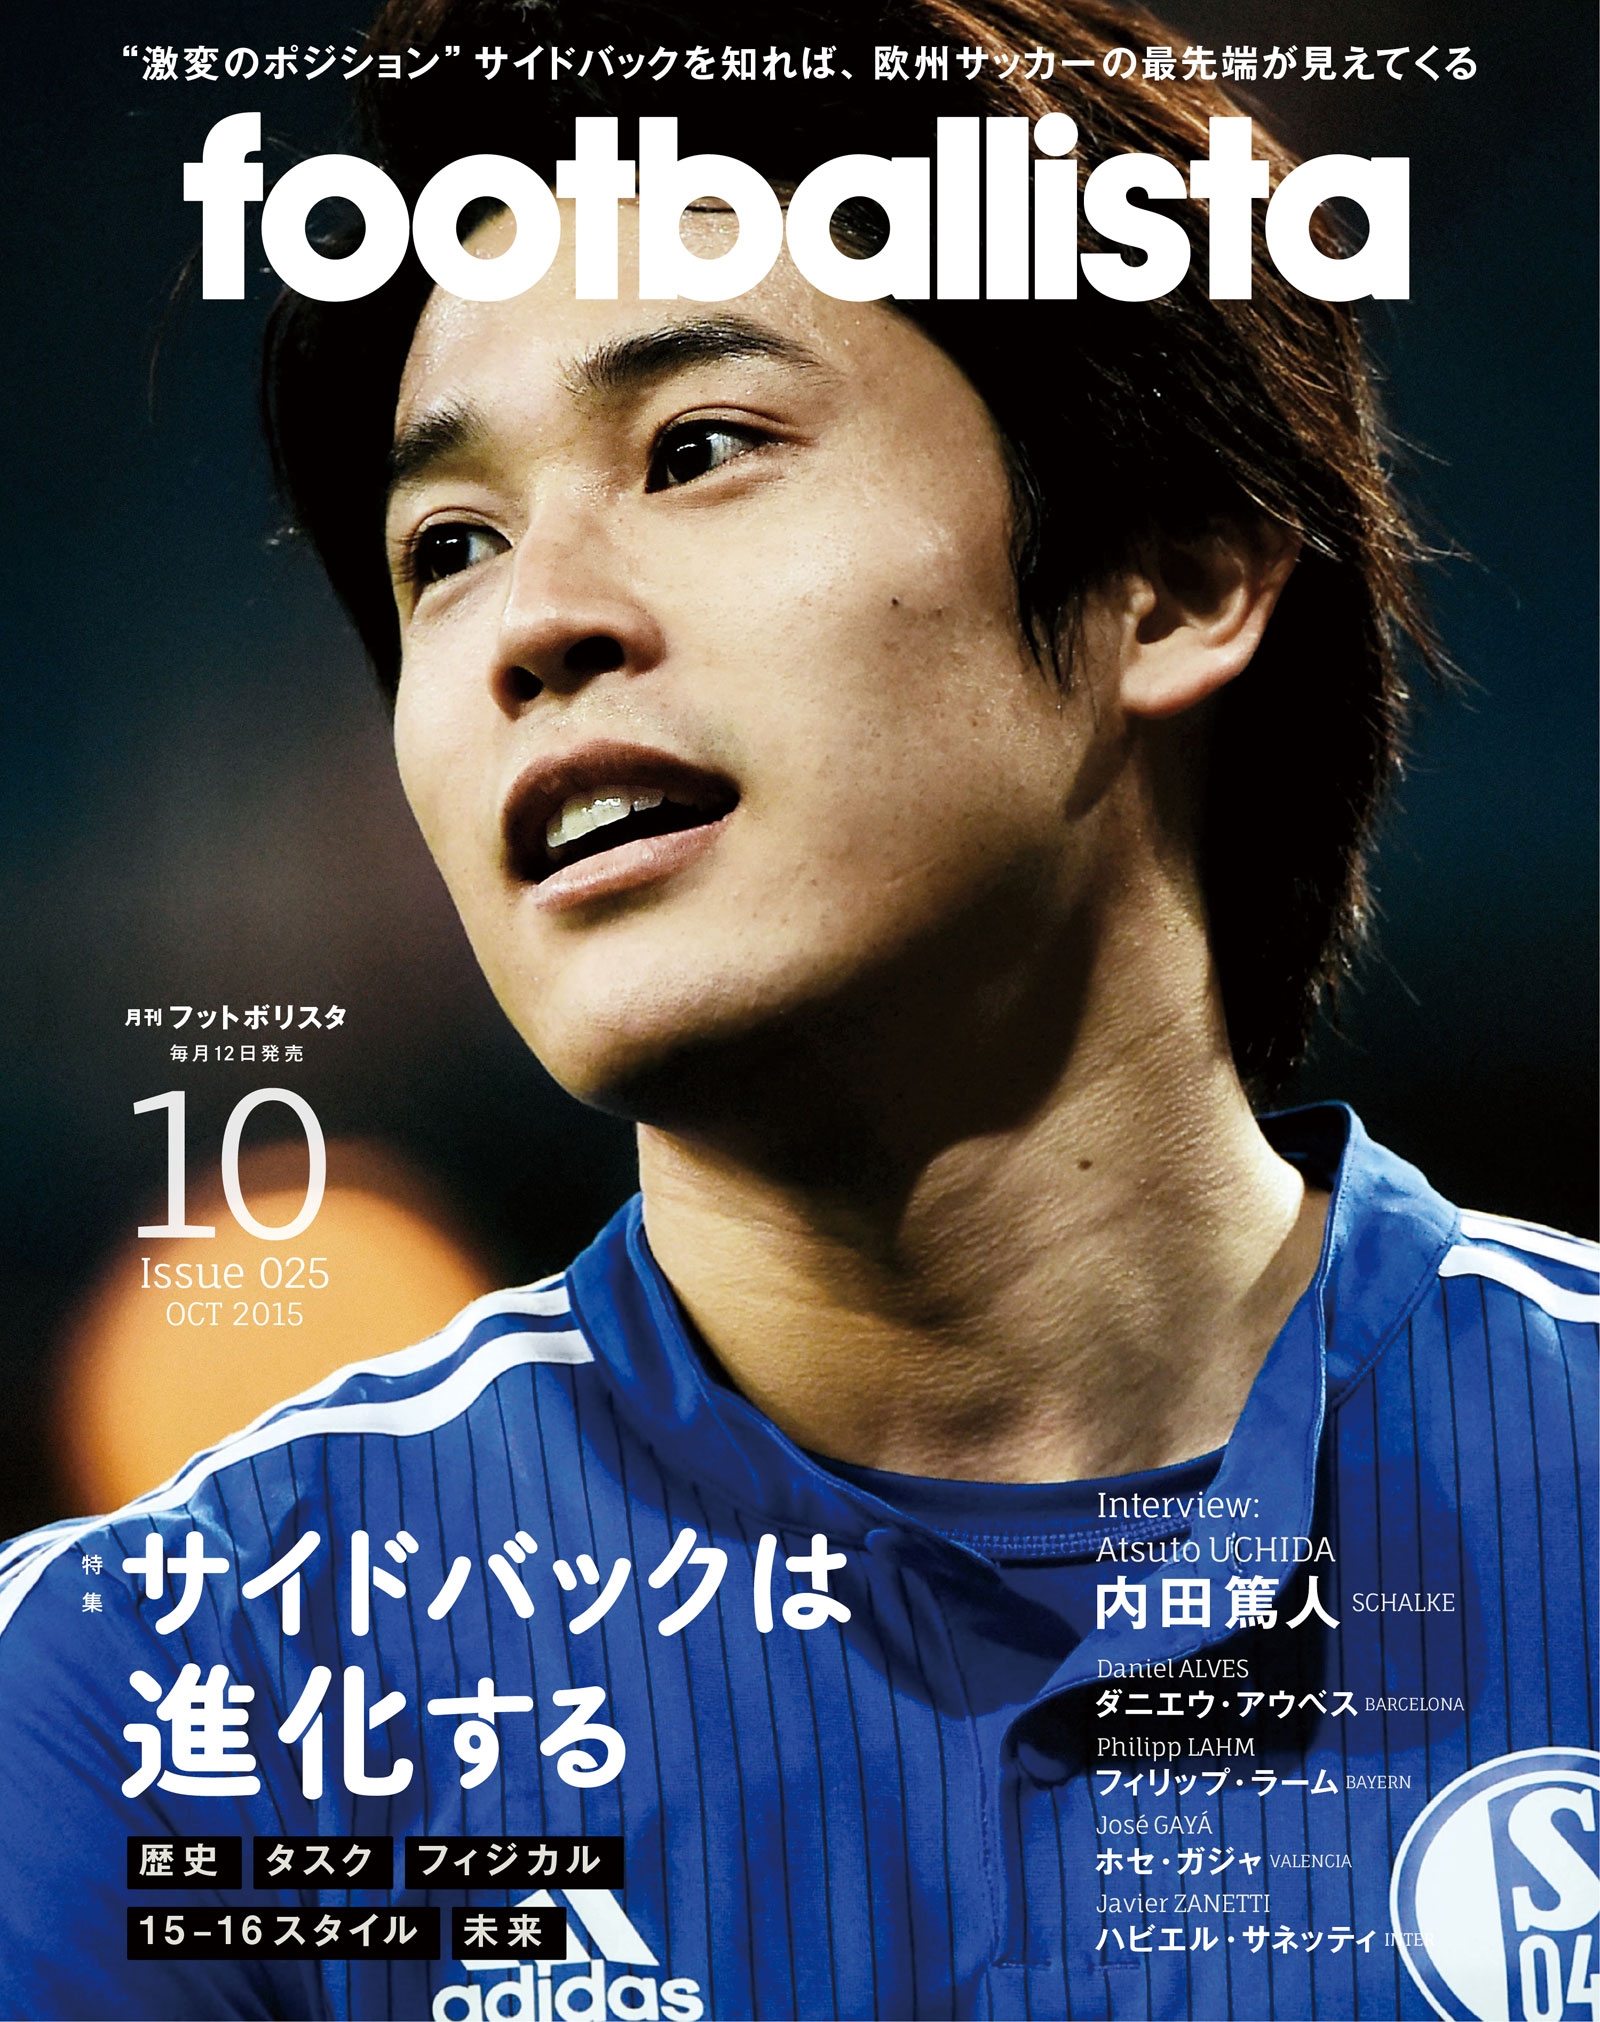 footballista 12  Issue075